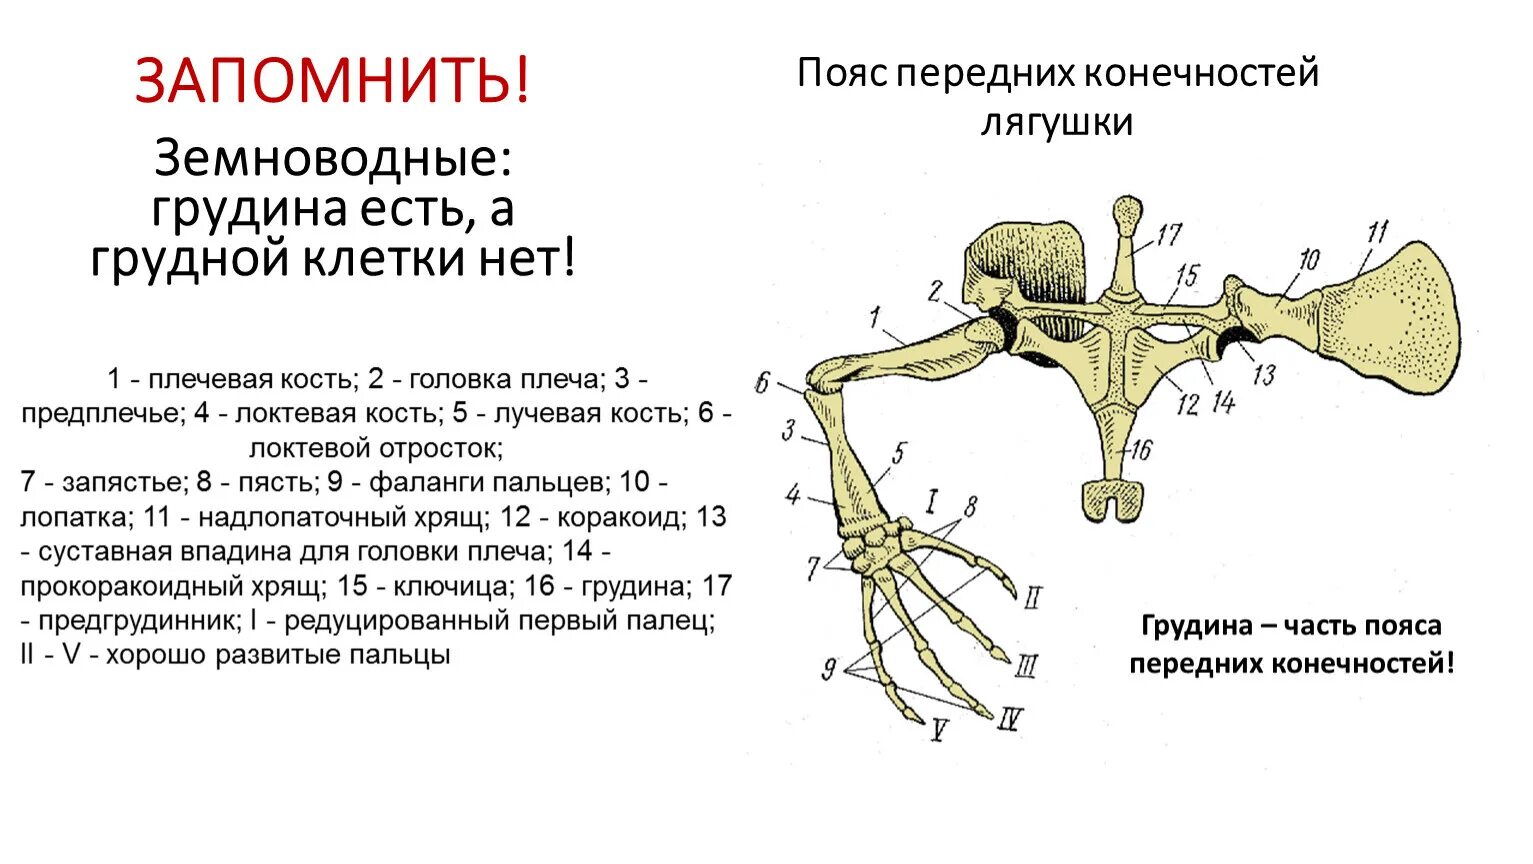 Кости передней конечности земноводных